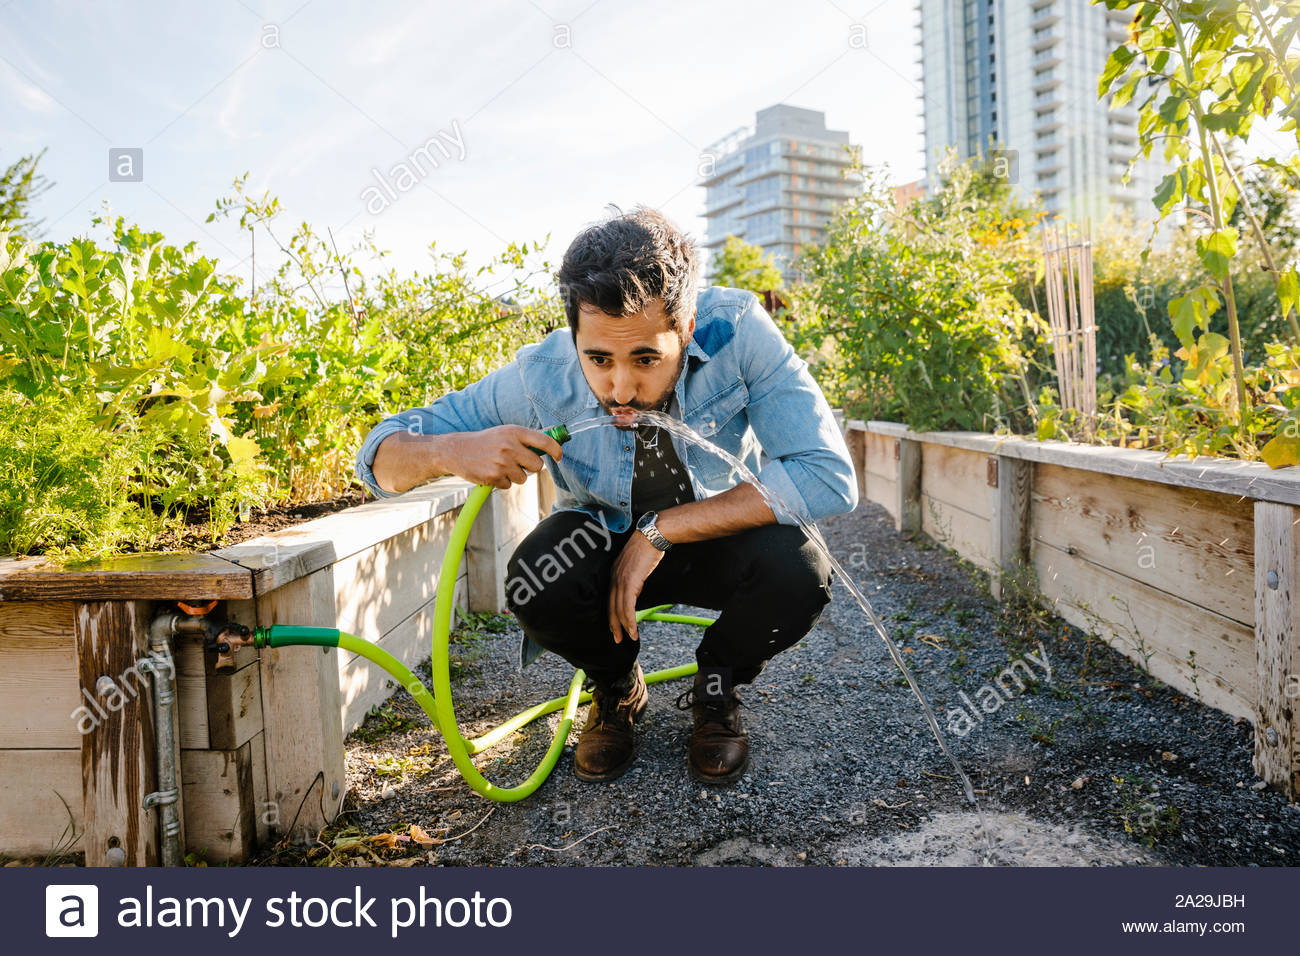 Junger Mann trinken aus dem Schlauch in sonniger, städtischen Gemeinschaft garten Stockfoto